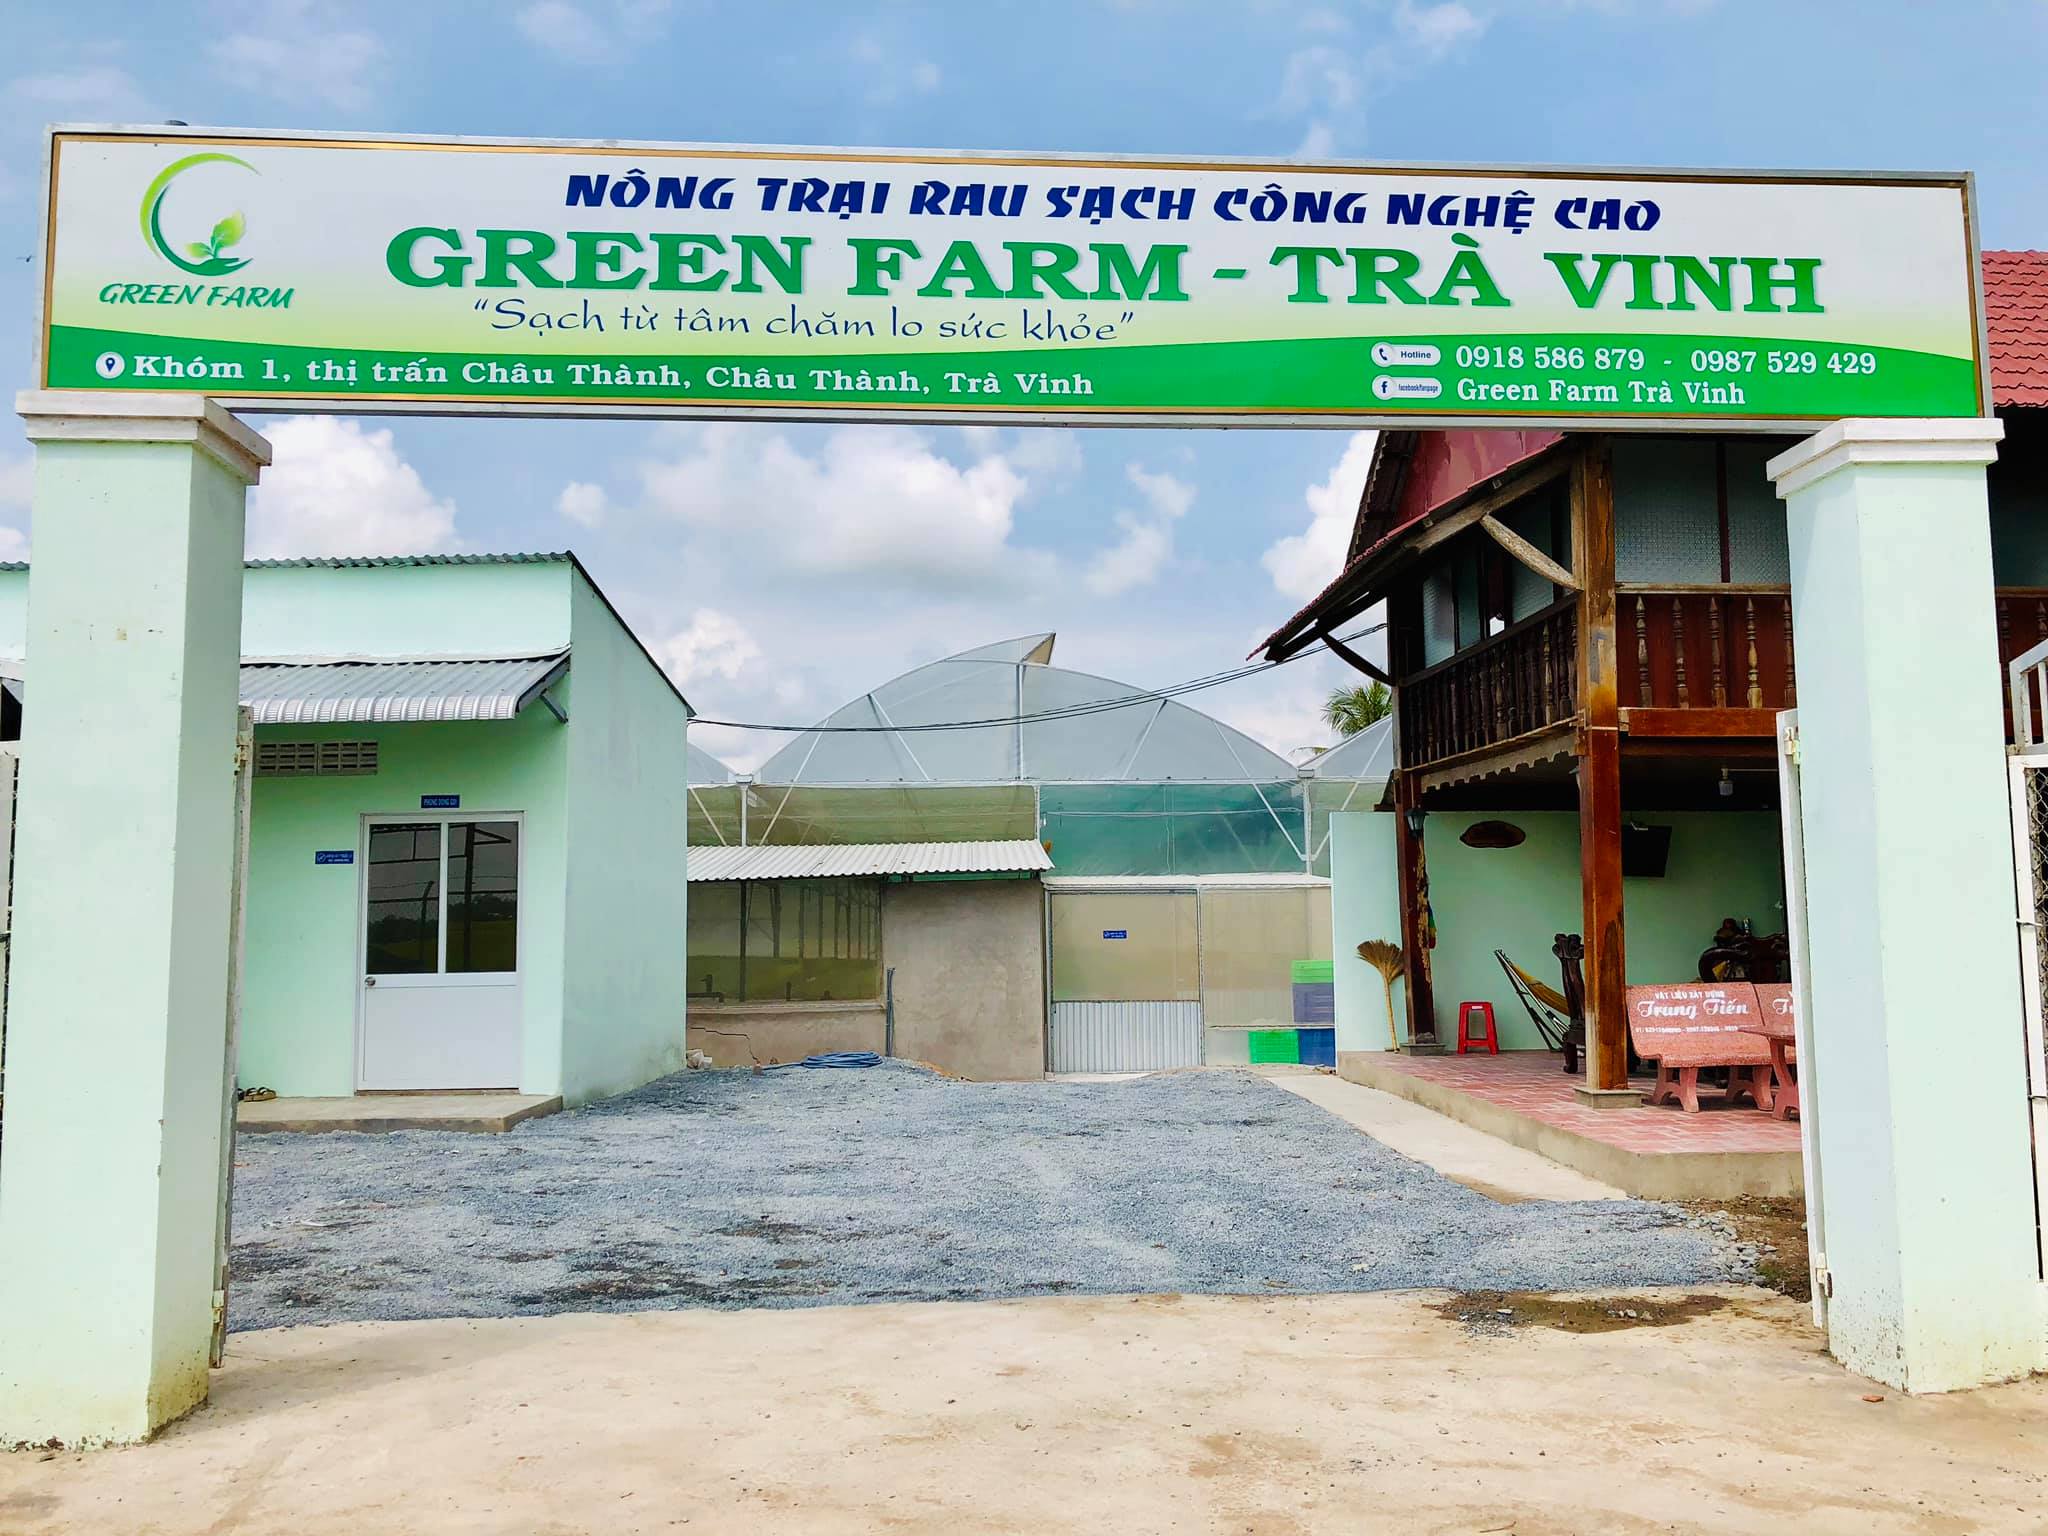 Nông Trại Rau Sạch Công Nghệ Cao Green Farm - Trà Vinh